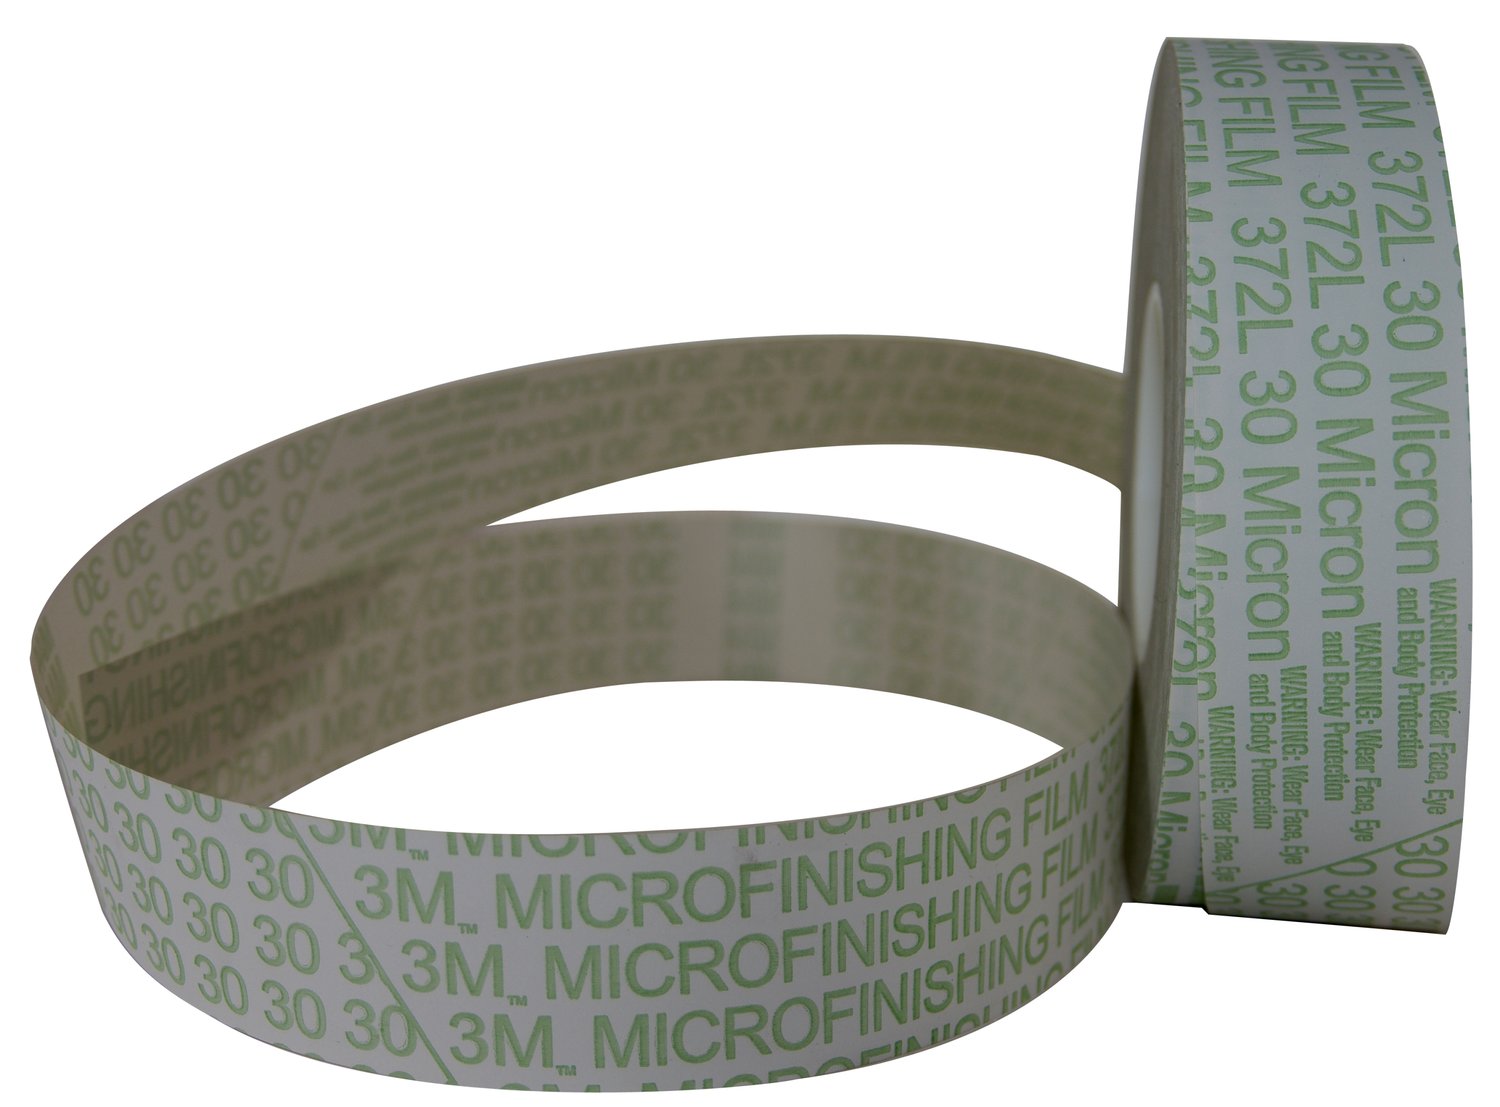 7010509313 - 3M Microfinishing Film Belt 362L, 15 Mic 3MIL, 2 in x 30 in